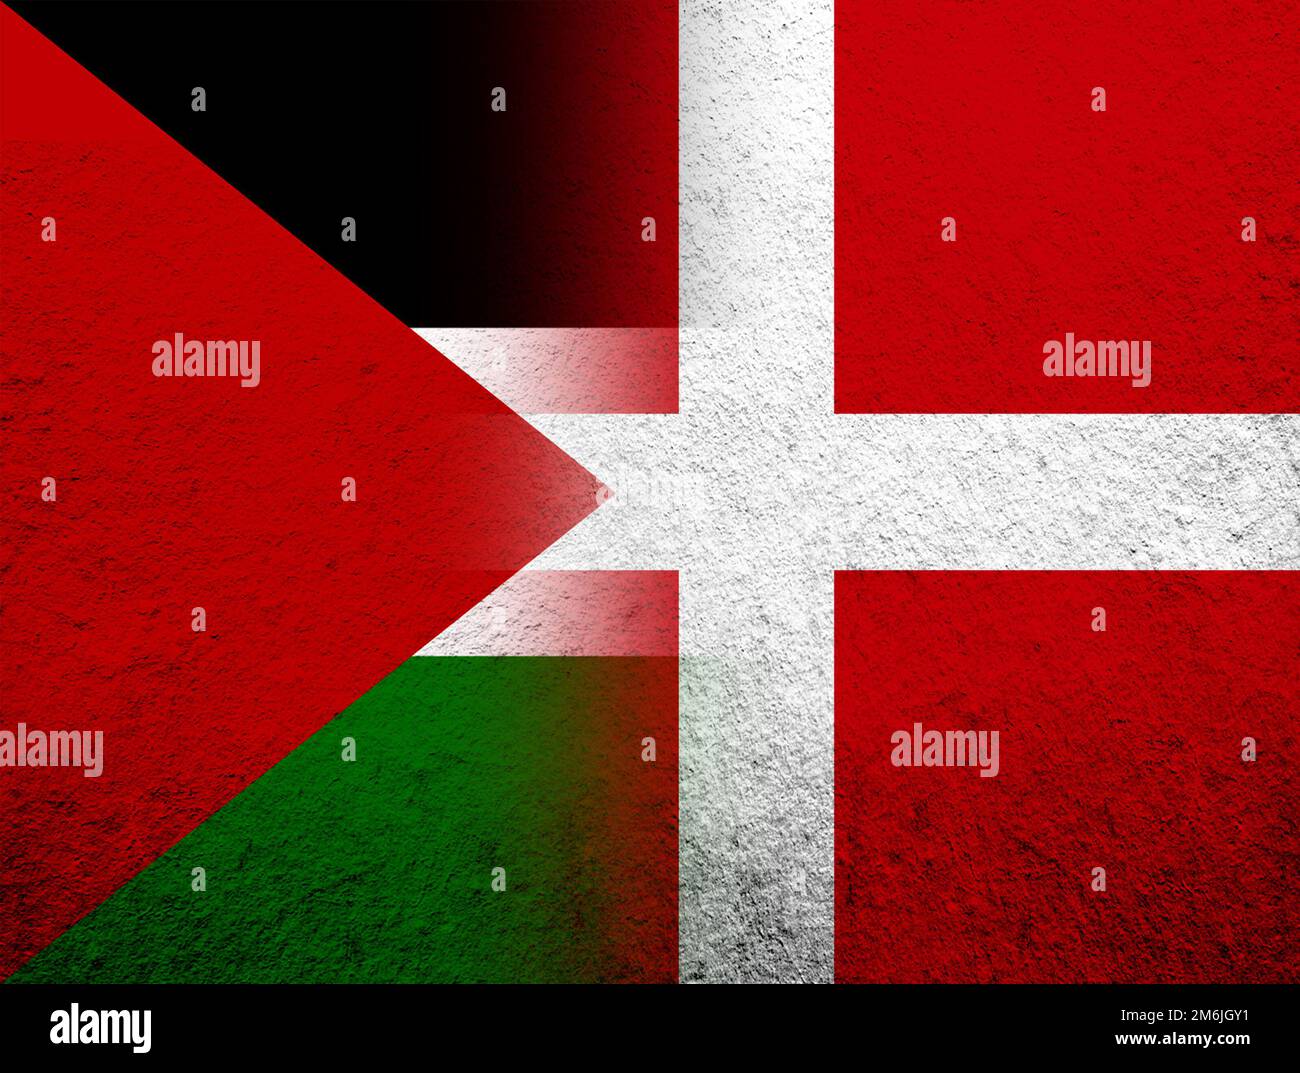 Le Royaume du Danemark drapeau national avec le drapeau de la Palestine. Grunge l'arrière-plan Banque D'Images